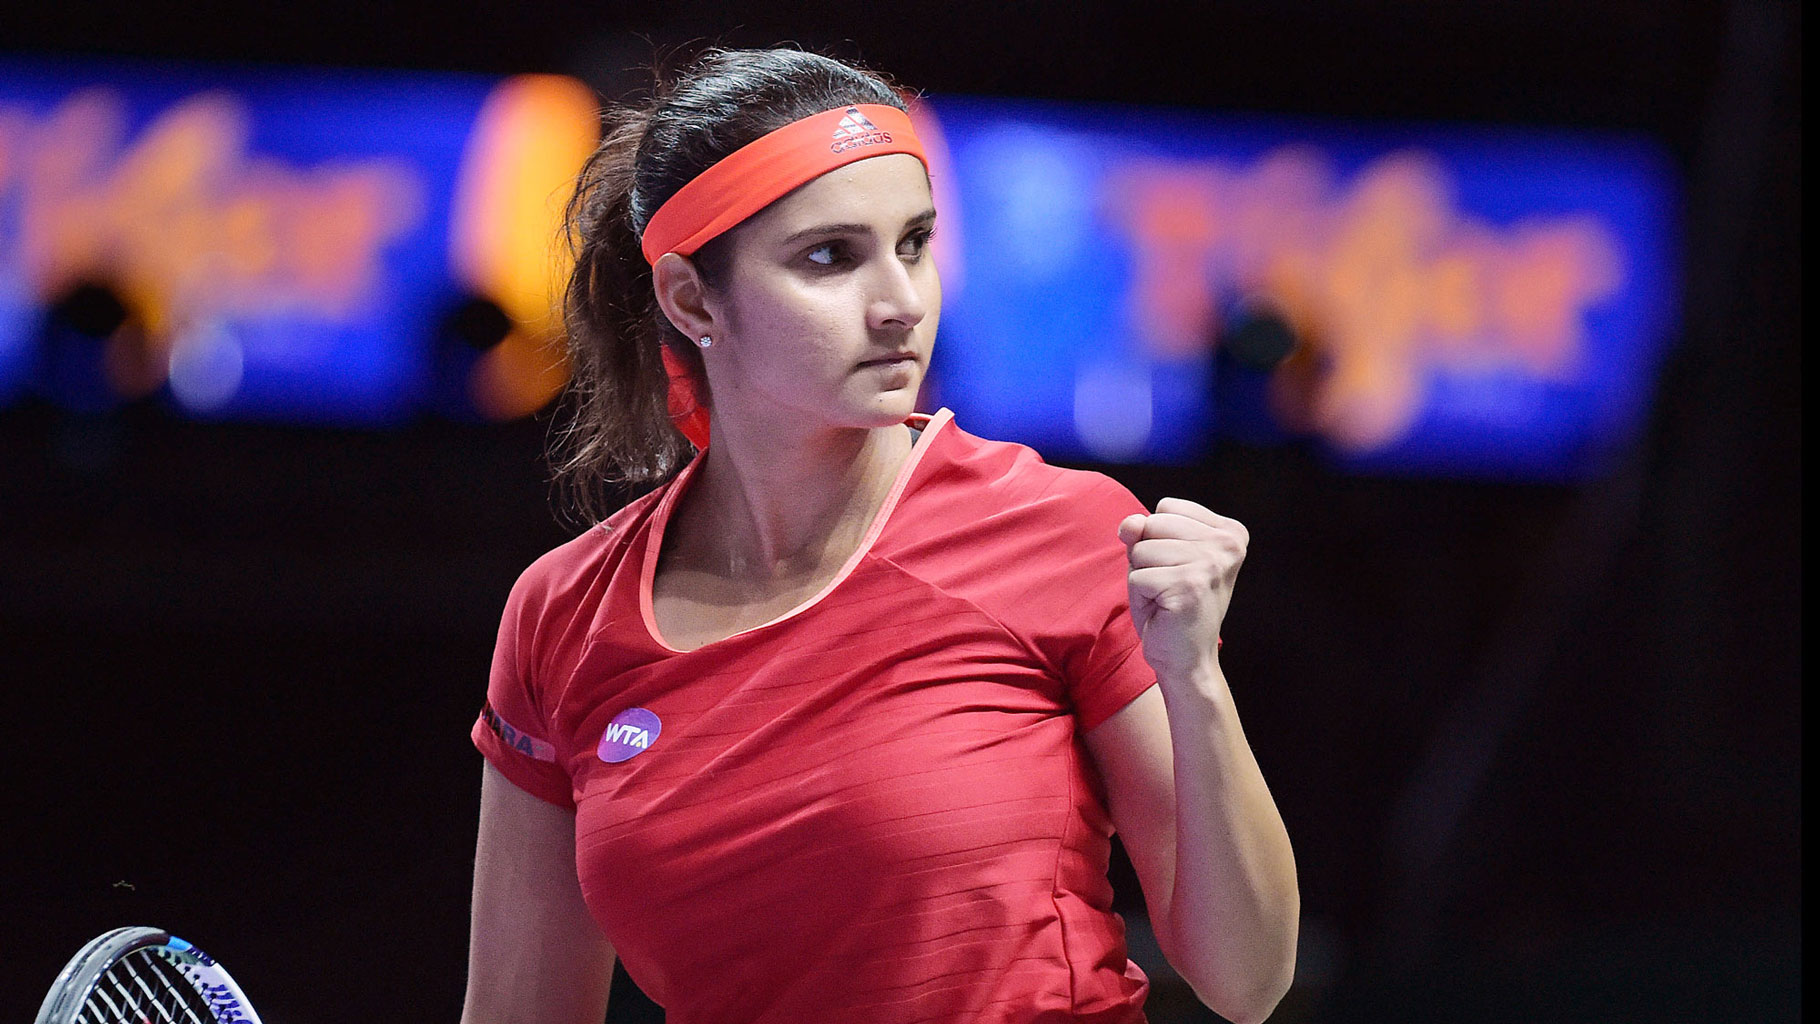 Sania Mirza Tennis Player India